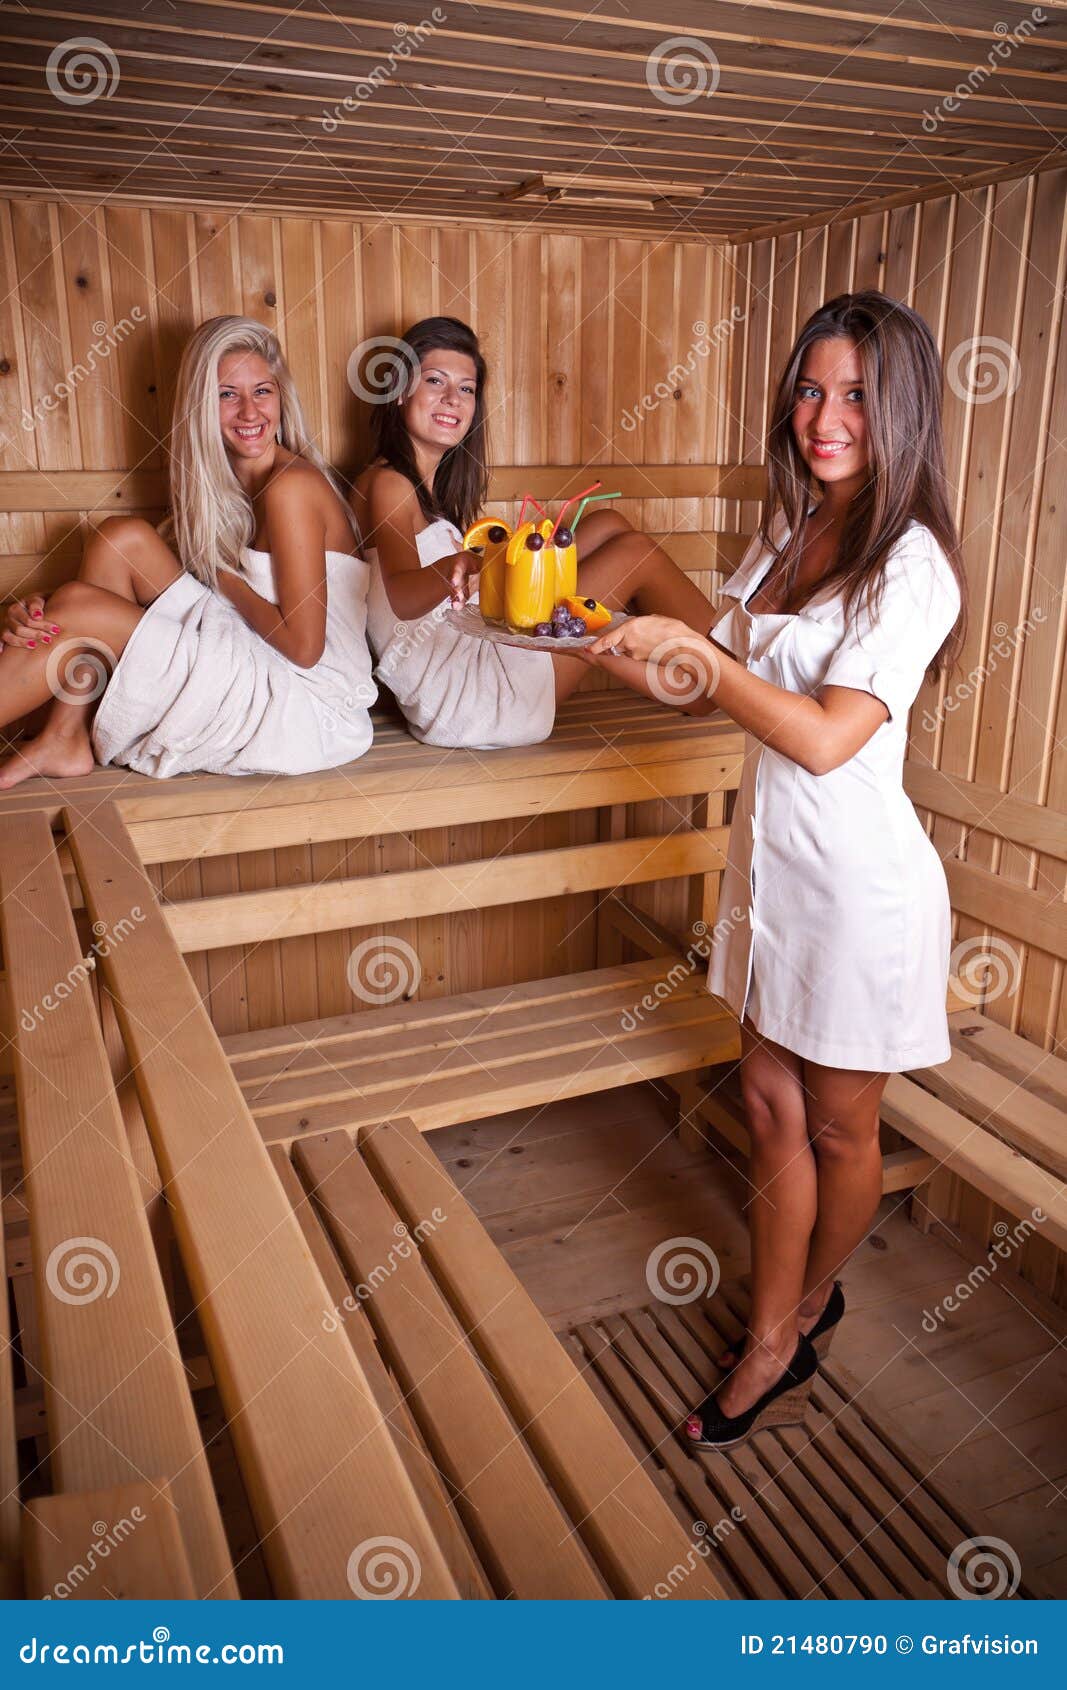 Sauna Serve Stock Photo Image 21480790